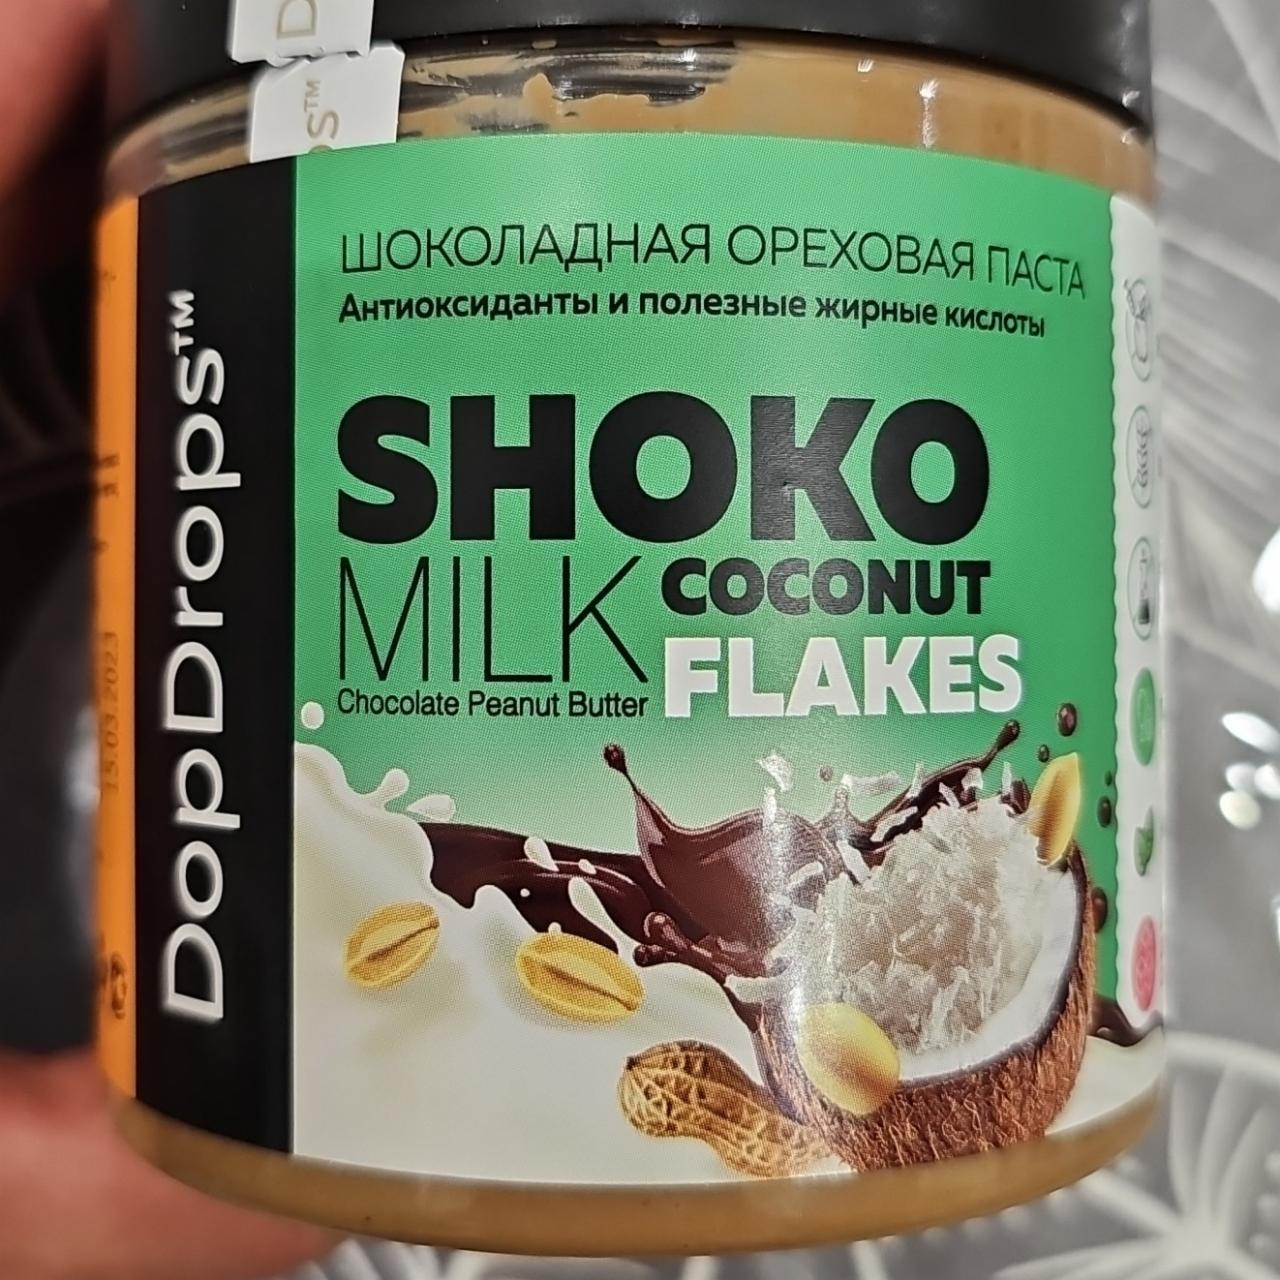 Фото - Шоколадная ореховая паста Shoko milk coconut flakes DopDrops